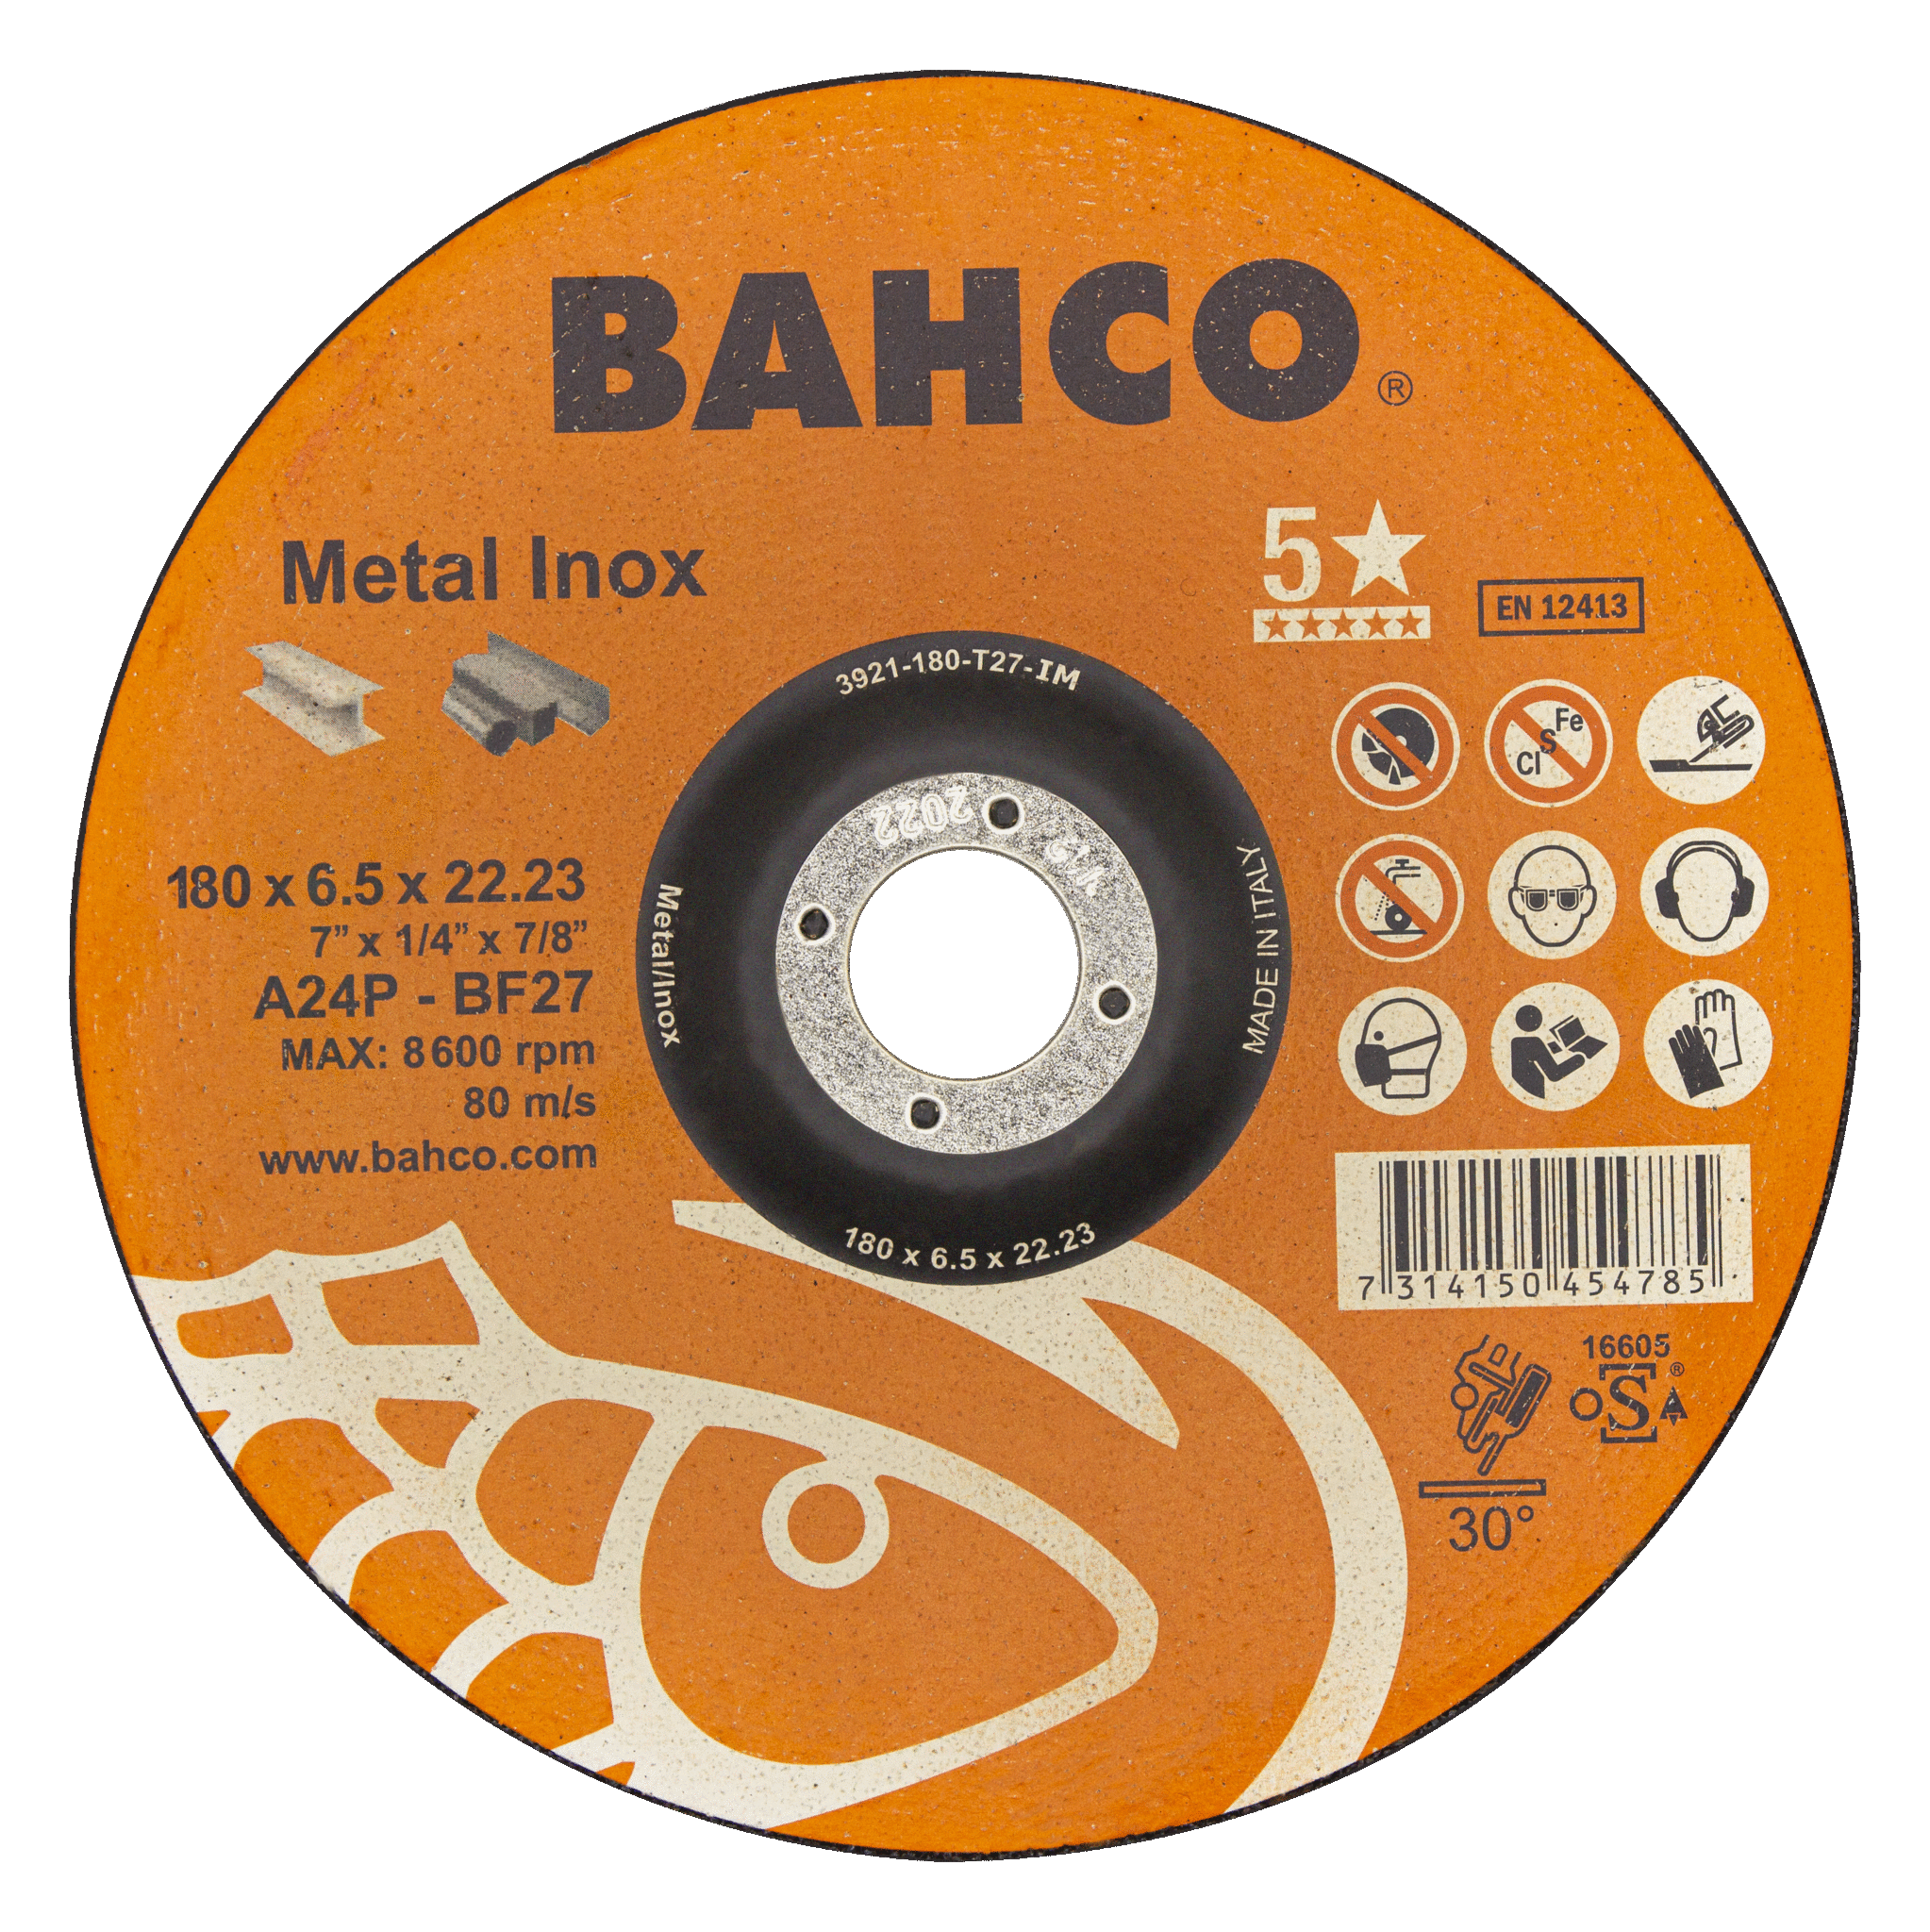 картинка Высокороизводительные диски для шлифования нержавеющей стали и металла 150 x 6.4 x 22.23mm BAHCO 3921-150-T27-IM от магазина "Элит-инструмент"